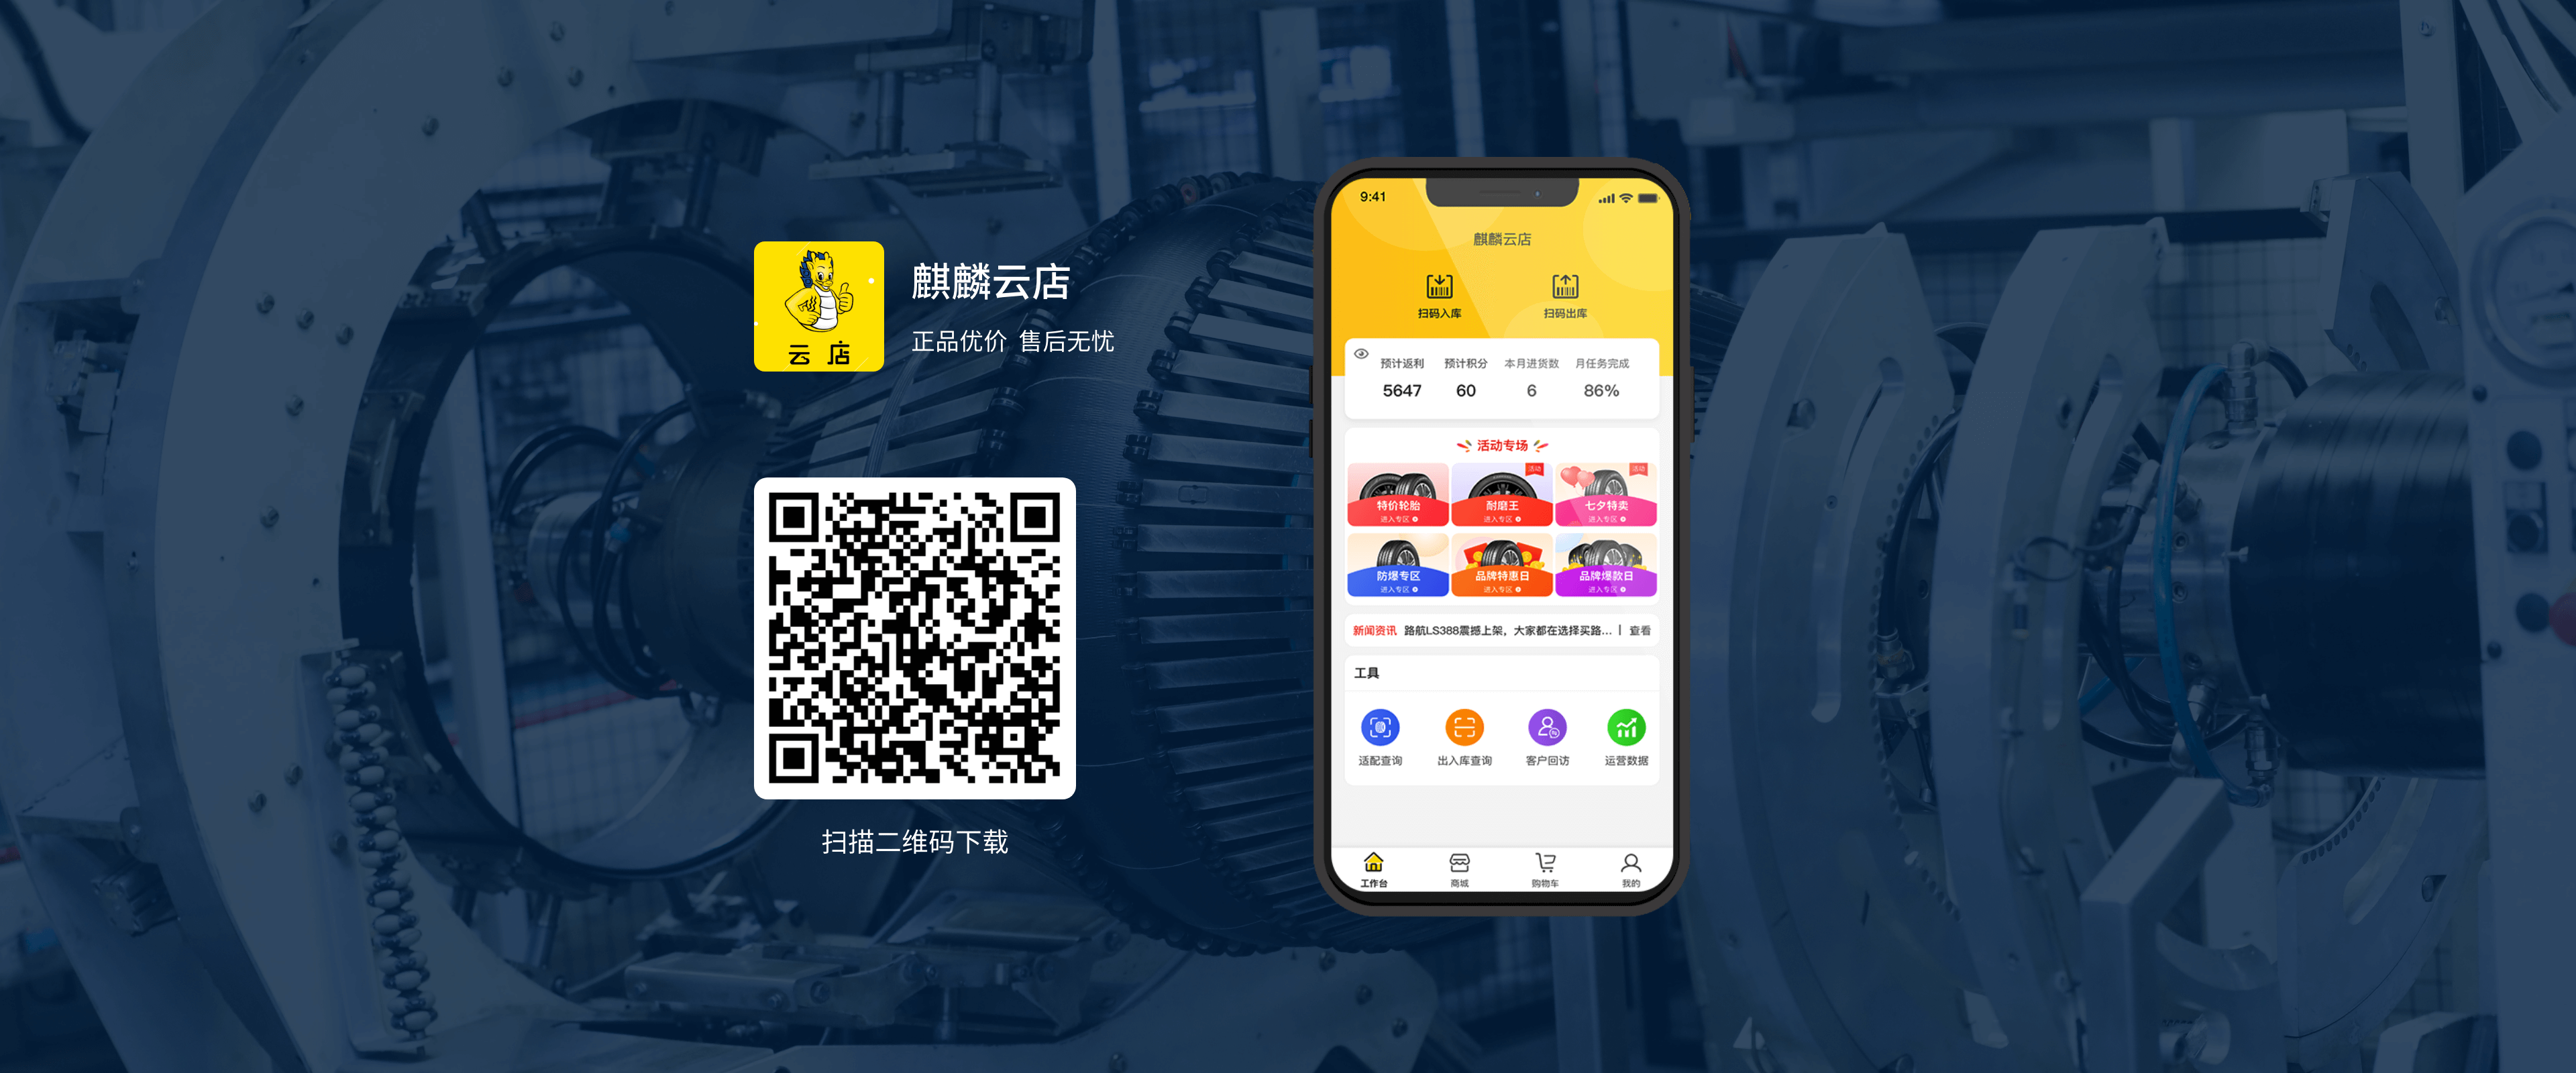 爱游戏ayxayx麒麟云店App